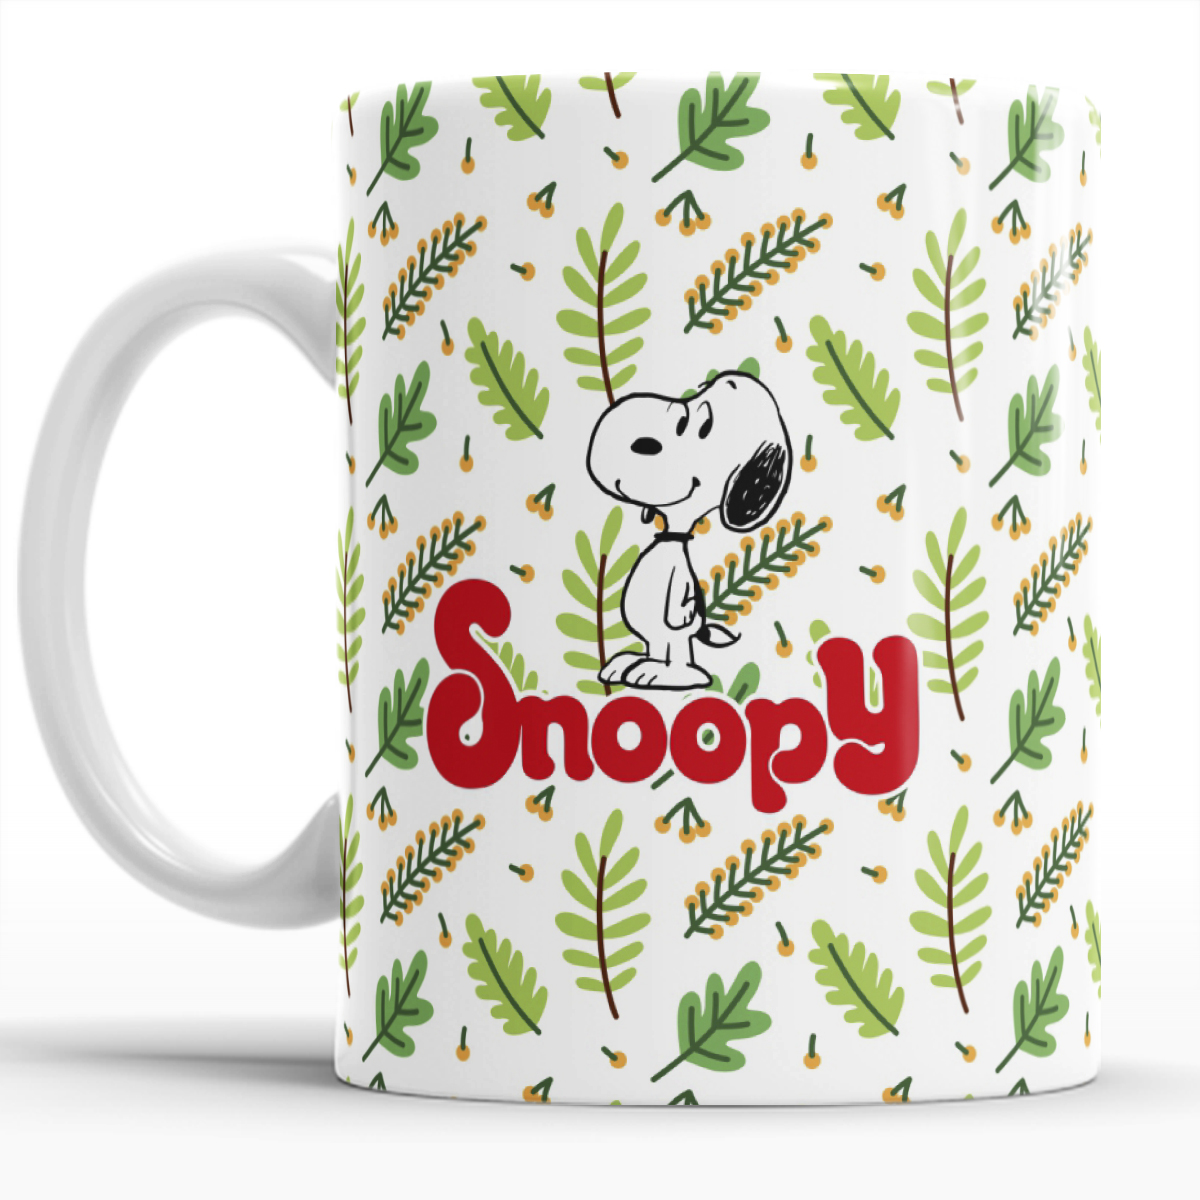 Taza Snoopy  Taza de cerámica con estampado de Snoopy, muy diverti